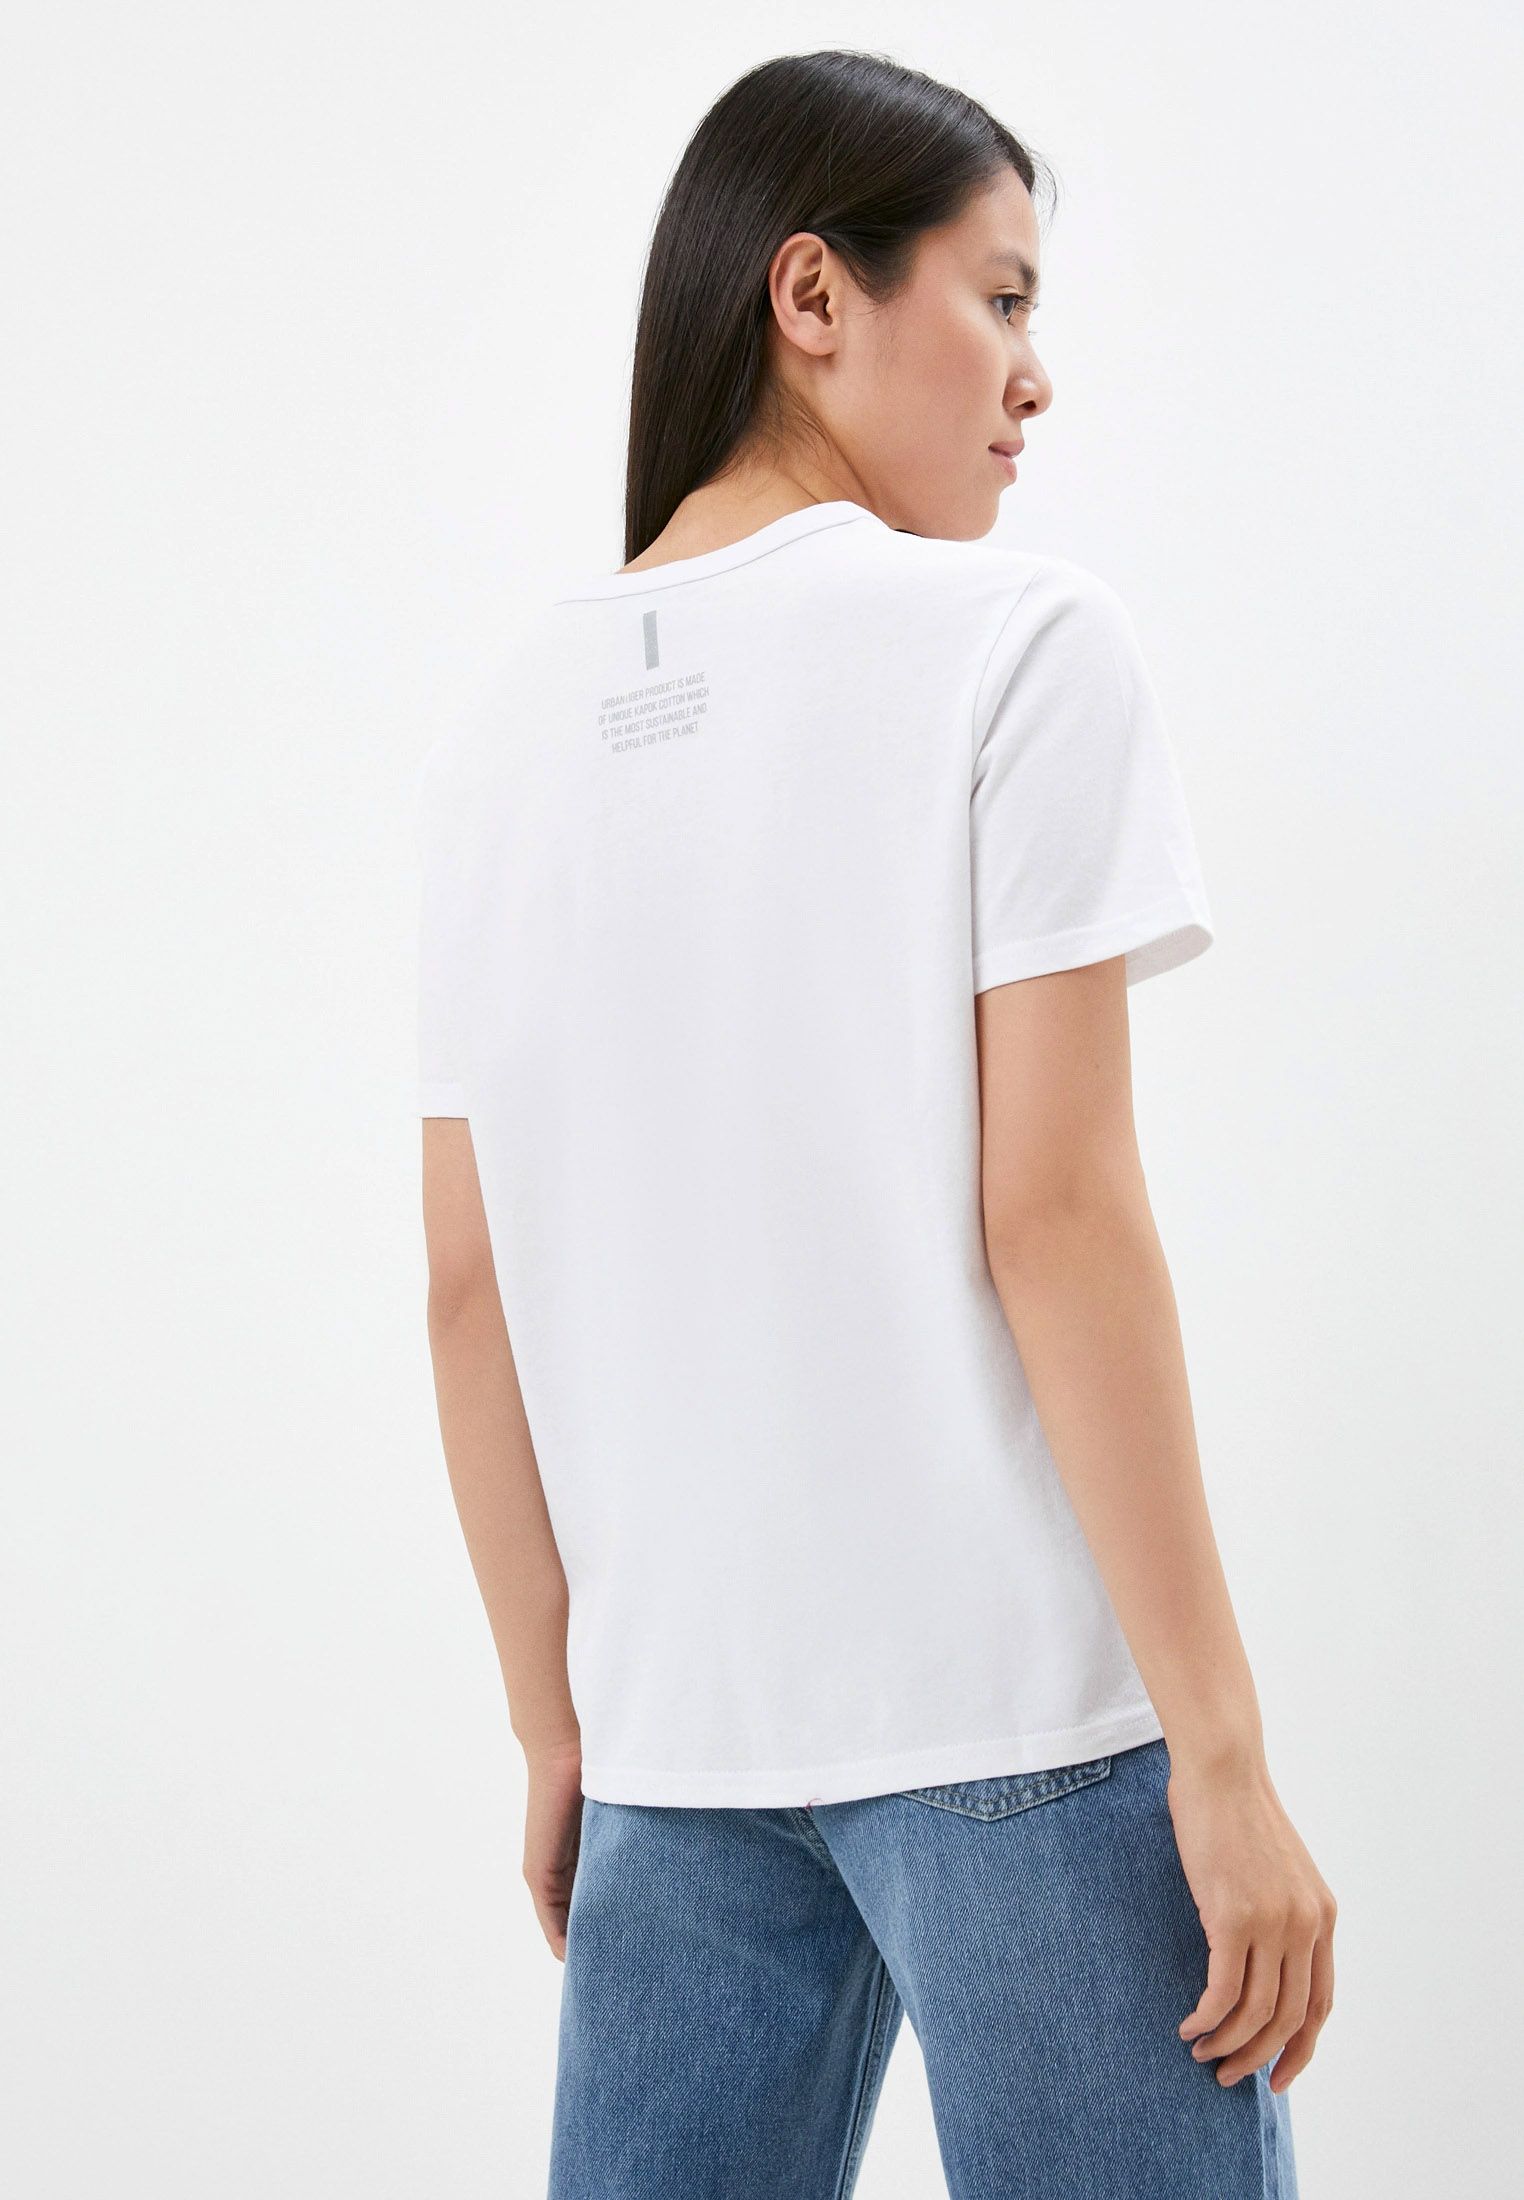 фото белая женская футболка с валентигром